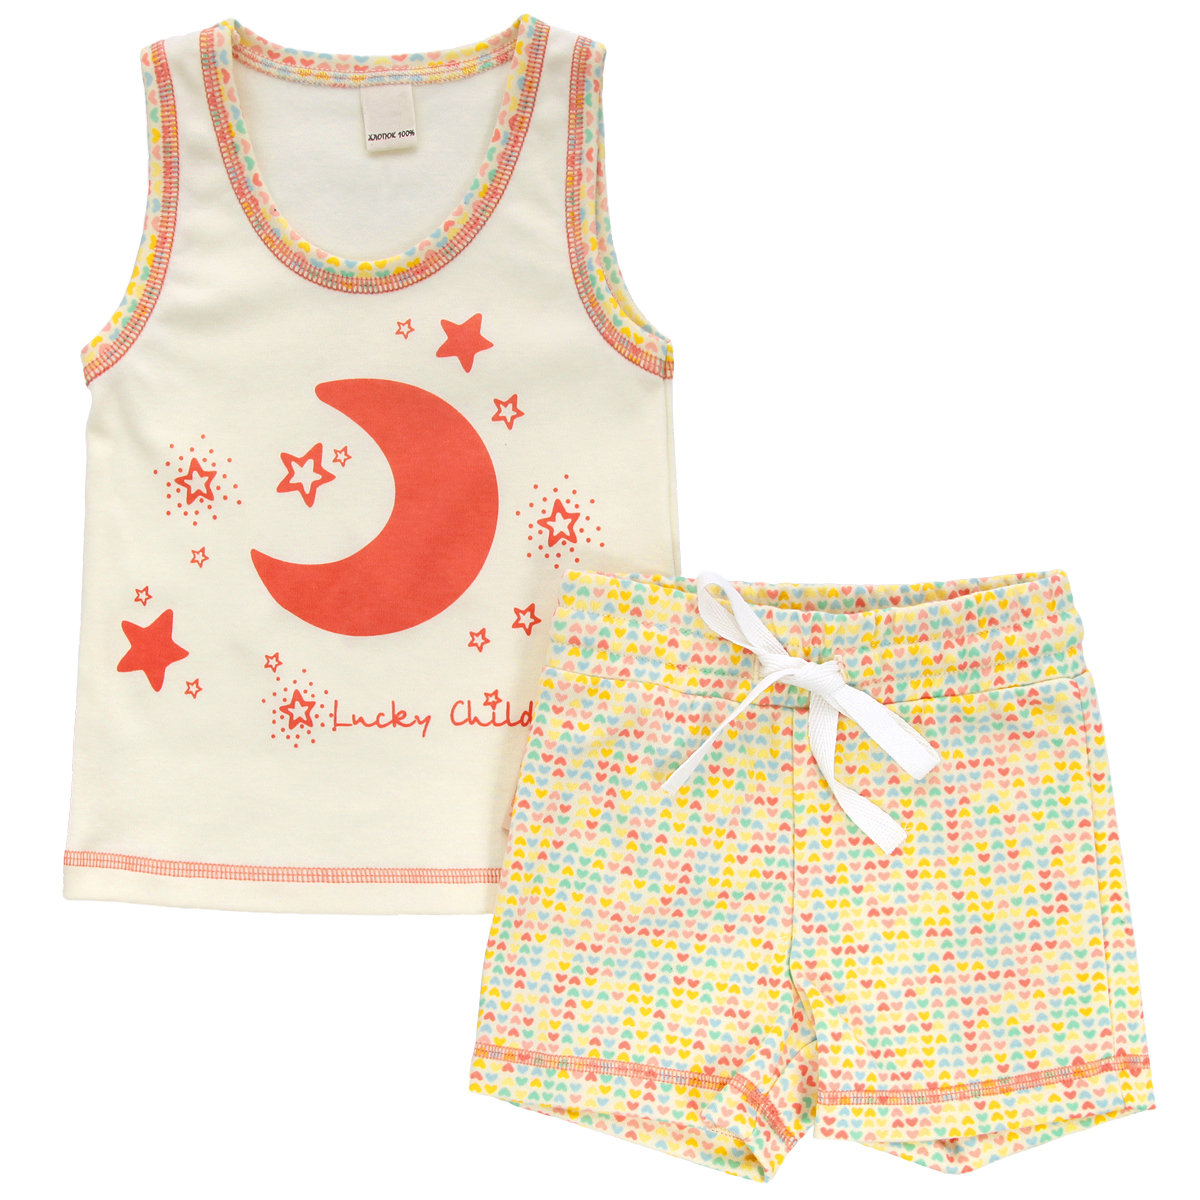 Комплект для девочки Lucky Child: майка, шорты, цвет: кремовый, желтый, оранжевый. 12-410. Размер 98/104